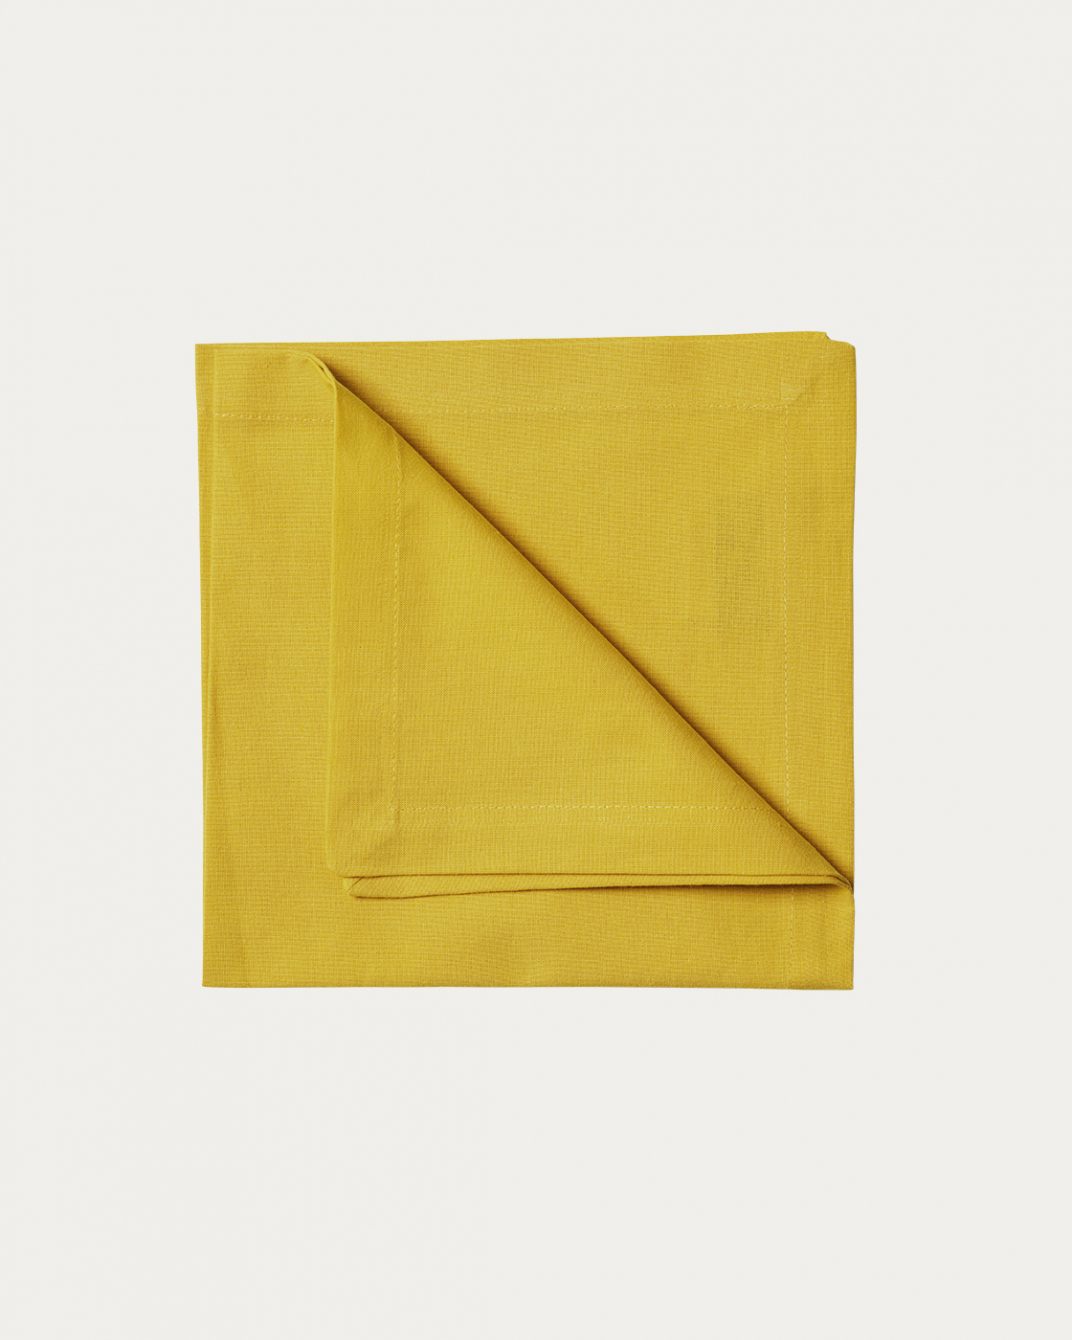 Image du produit serviette de table ROBERT jaune moutarde en coton doux de LINUM DESIGN. Taille 45 x 45 cm et vendu en lot de 4.